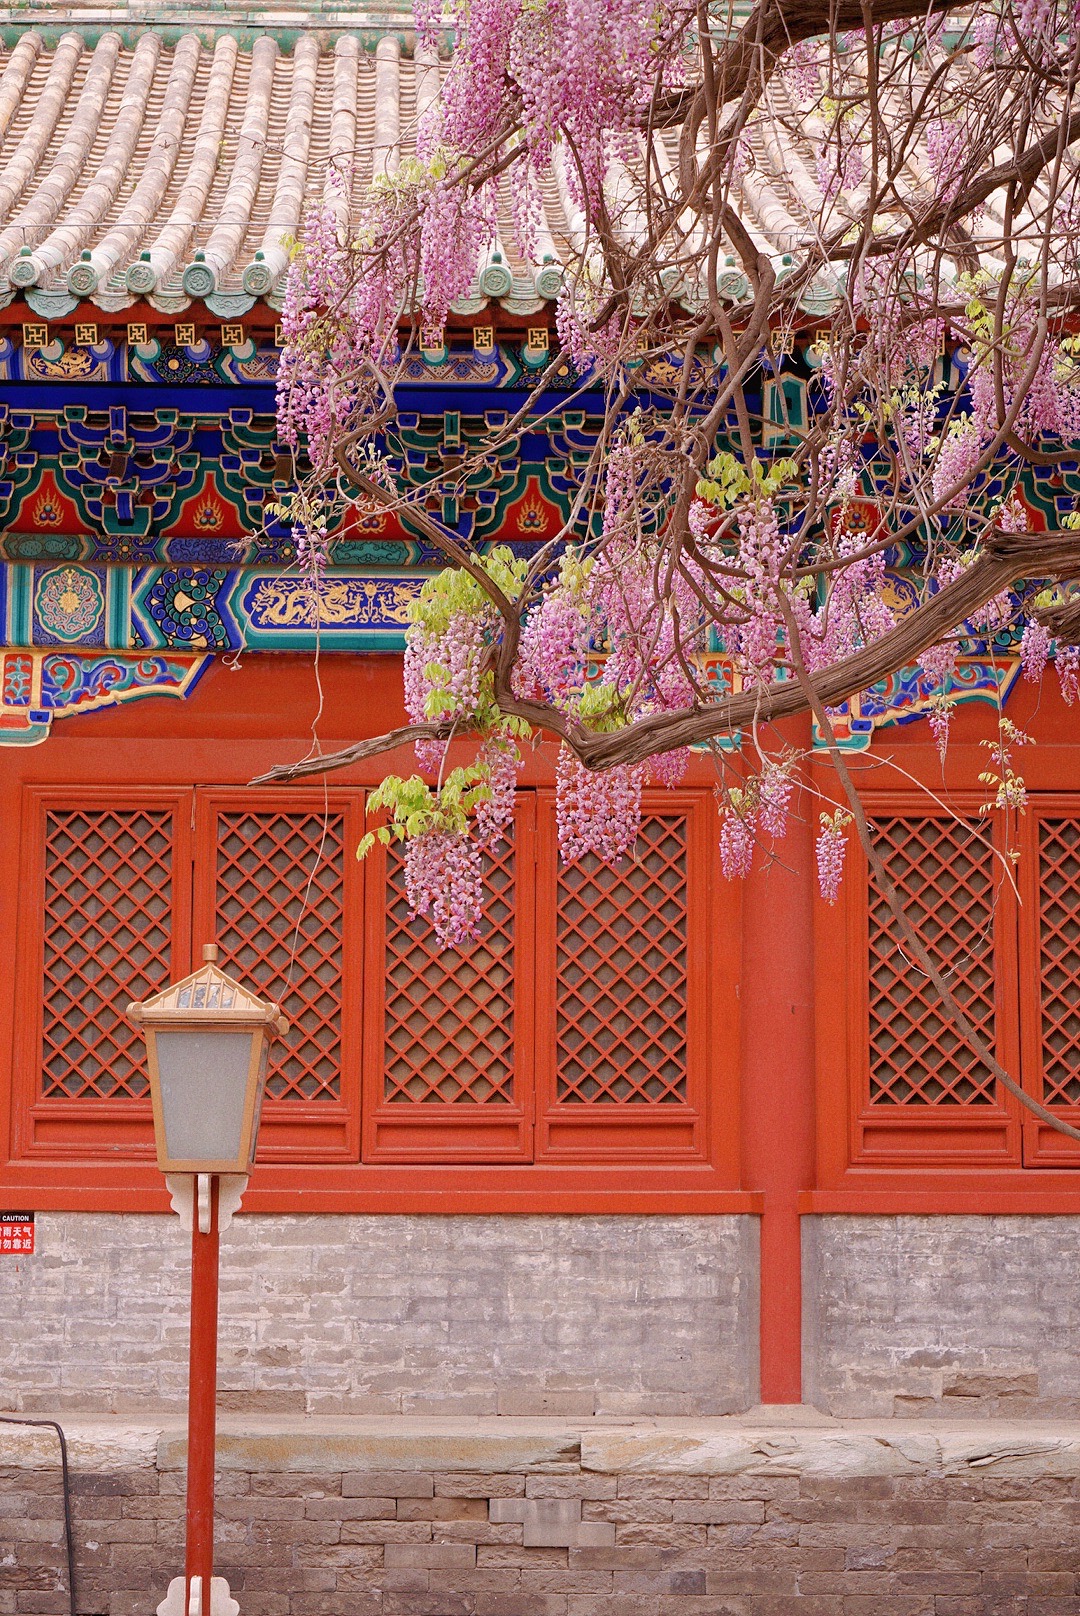 来北京旅行 不要错过国子监的梦幻紫藤花_孔庙和国子监博物馆